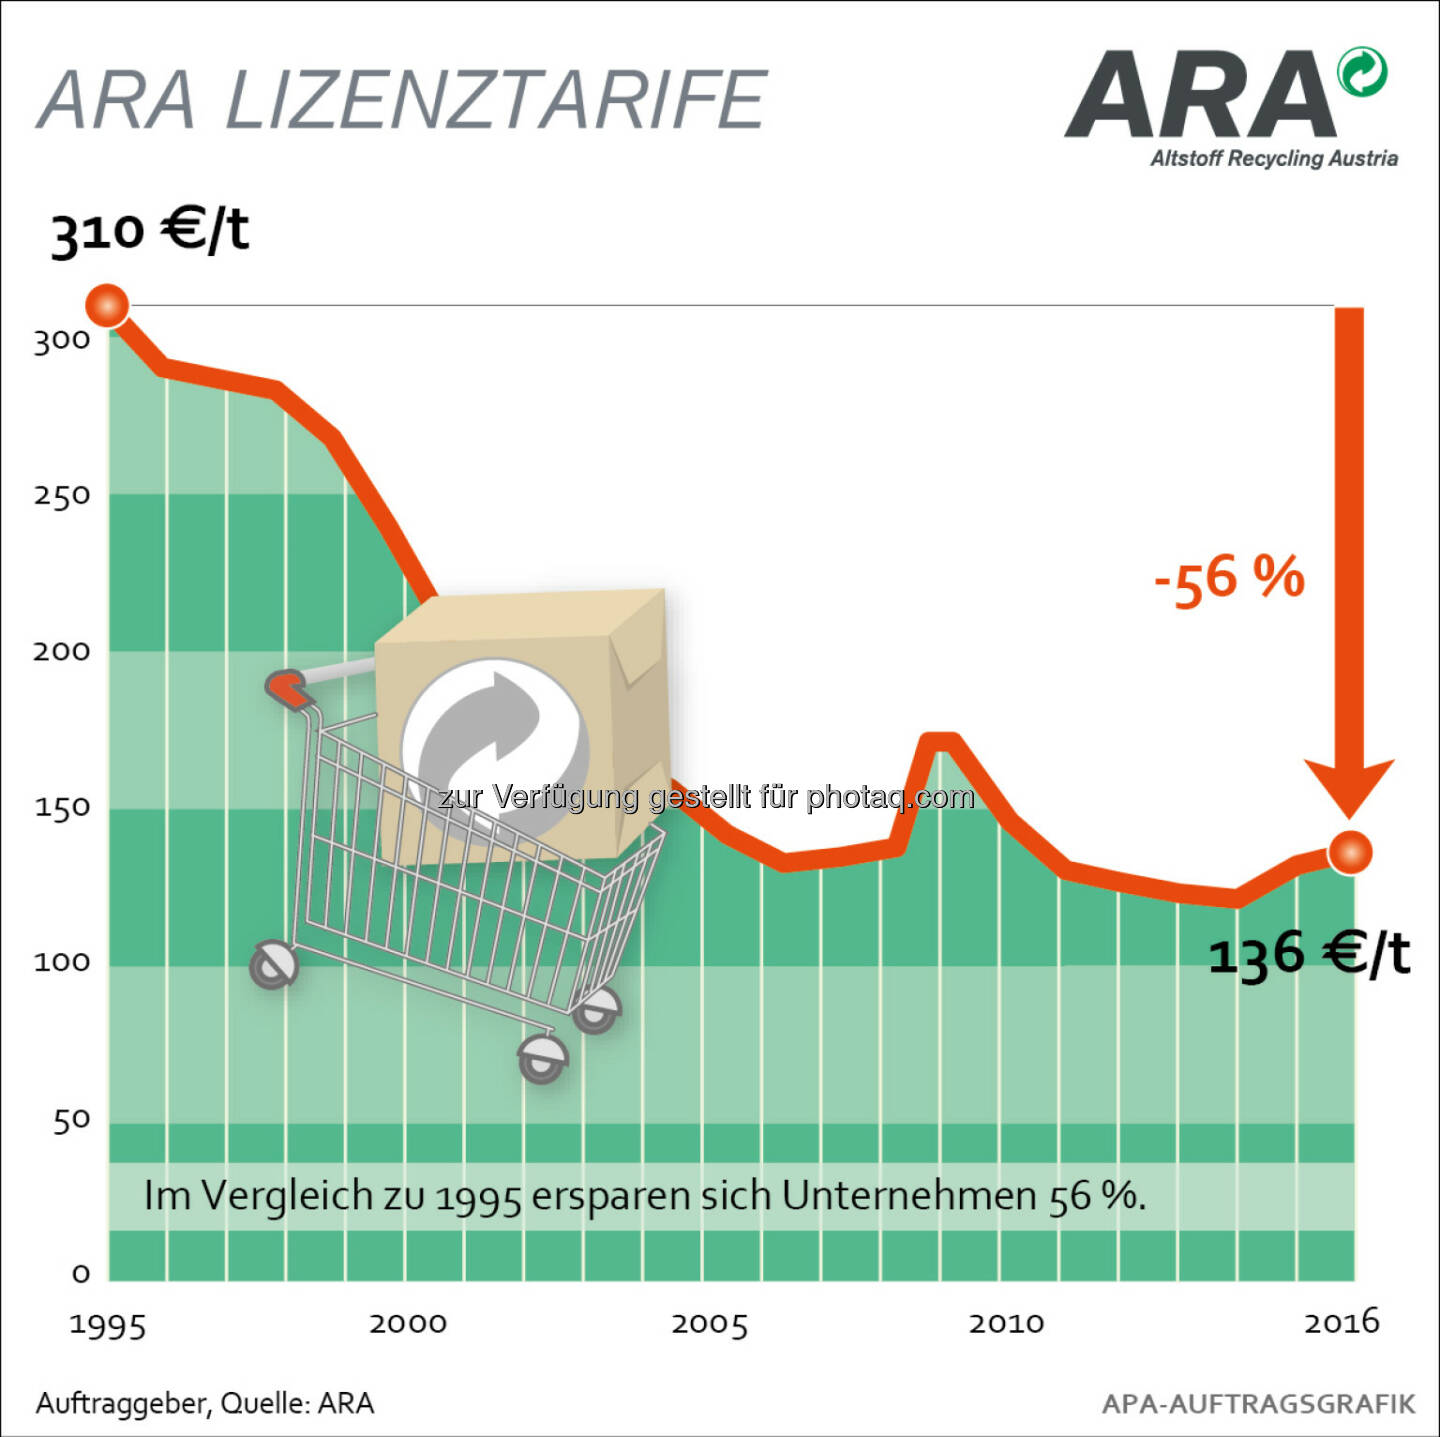 Tarifentwicklung der ARA seit 1995 : ARA Tarife 2016: Neue Verordnung bringt überschaubare Kostenerhöhung : Die neue Abgeltungsverordnung verursacht für die Verpackungssammelsysteme ab 2016 Mehrkosten in Höhe von jährlich 20 Mio. Euro : Davon betroffen ist auch die Altstoff Recycling Austria AG (ARA), deren Tarife sich dadurch im Haushaltsbereich erhöhen : Fotocredit: ARA/wax